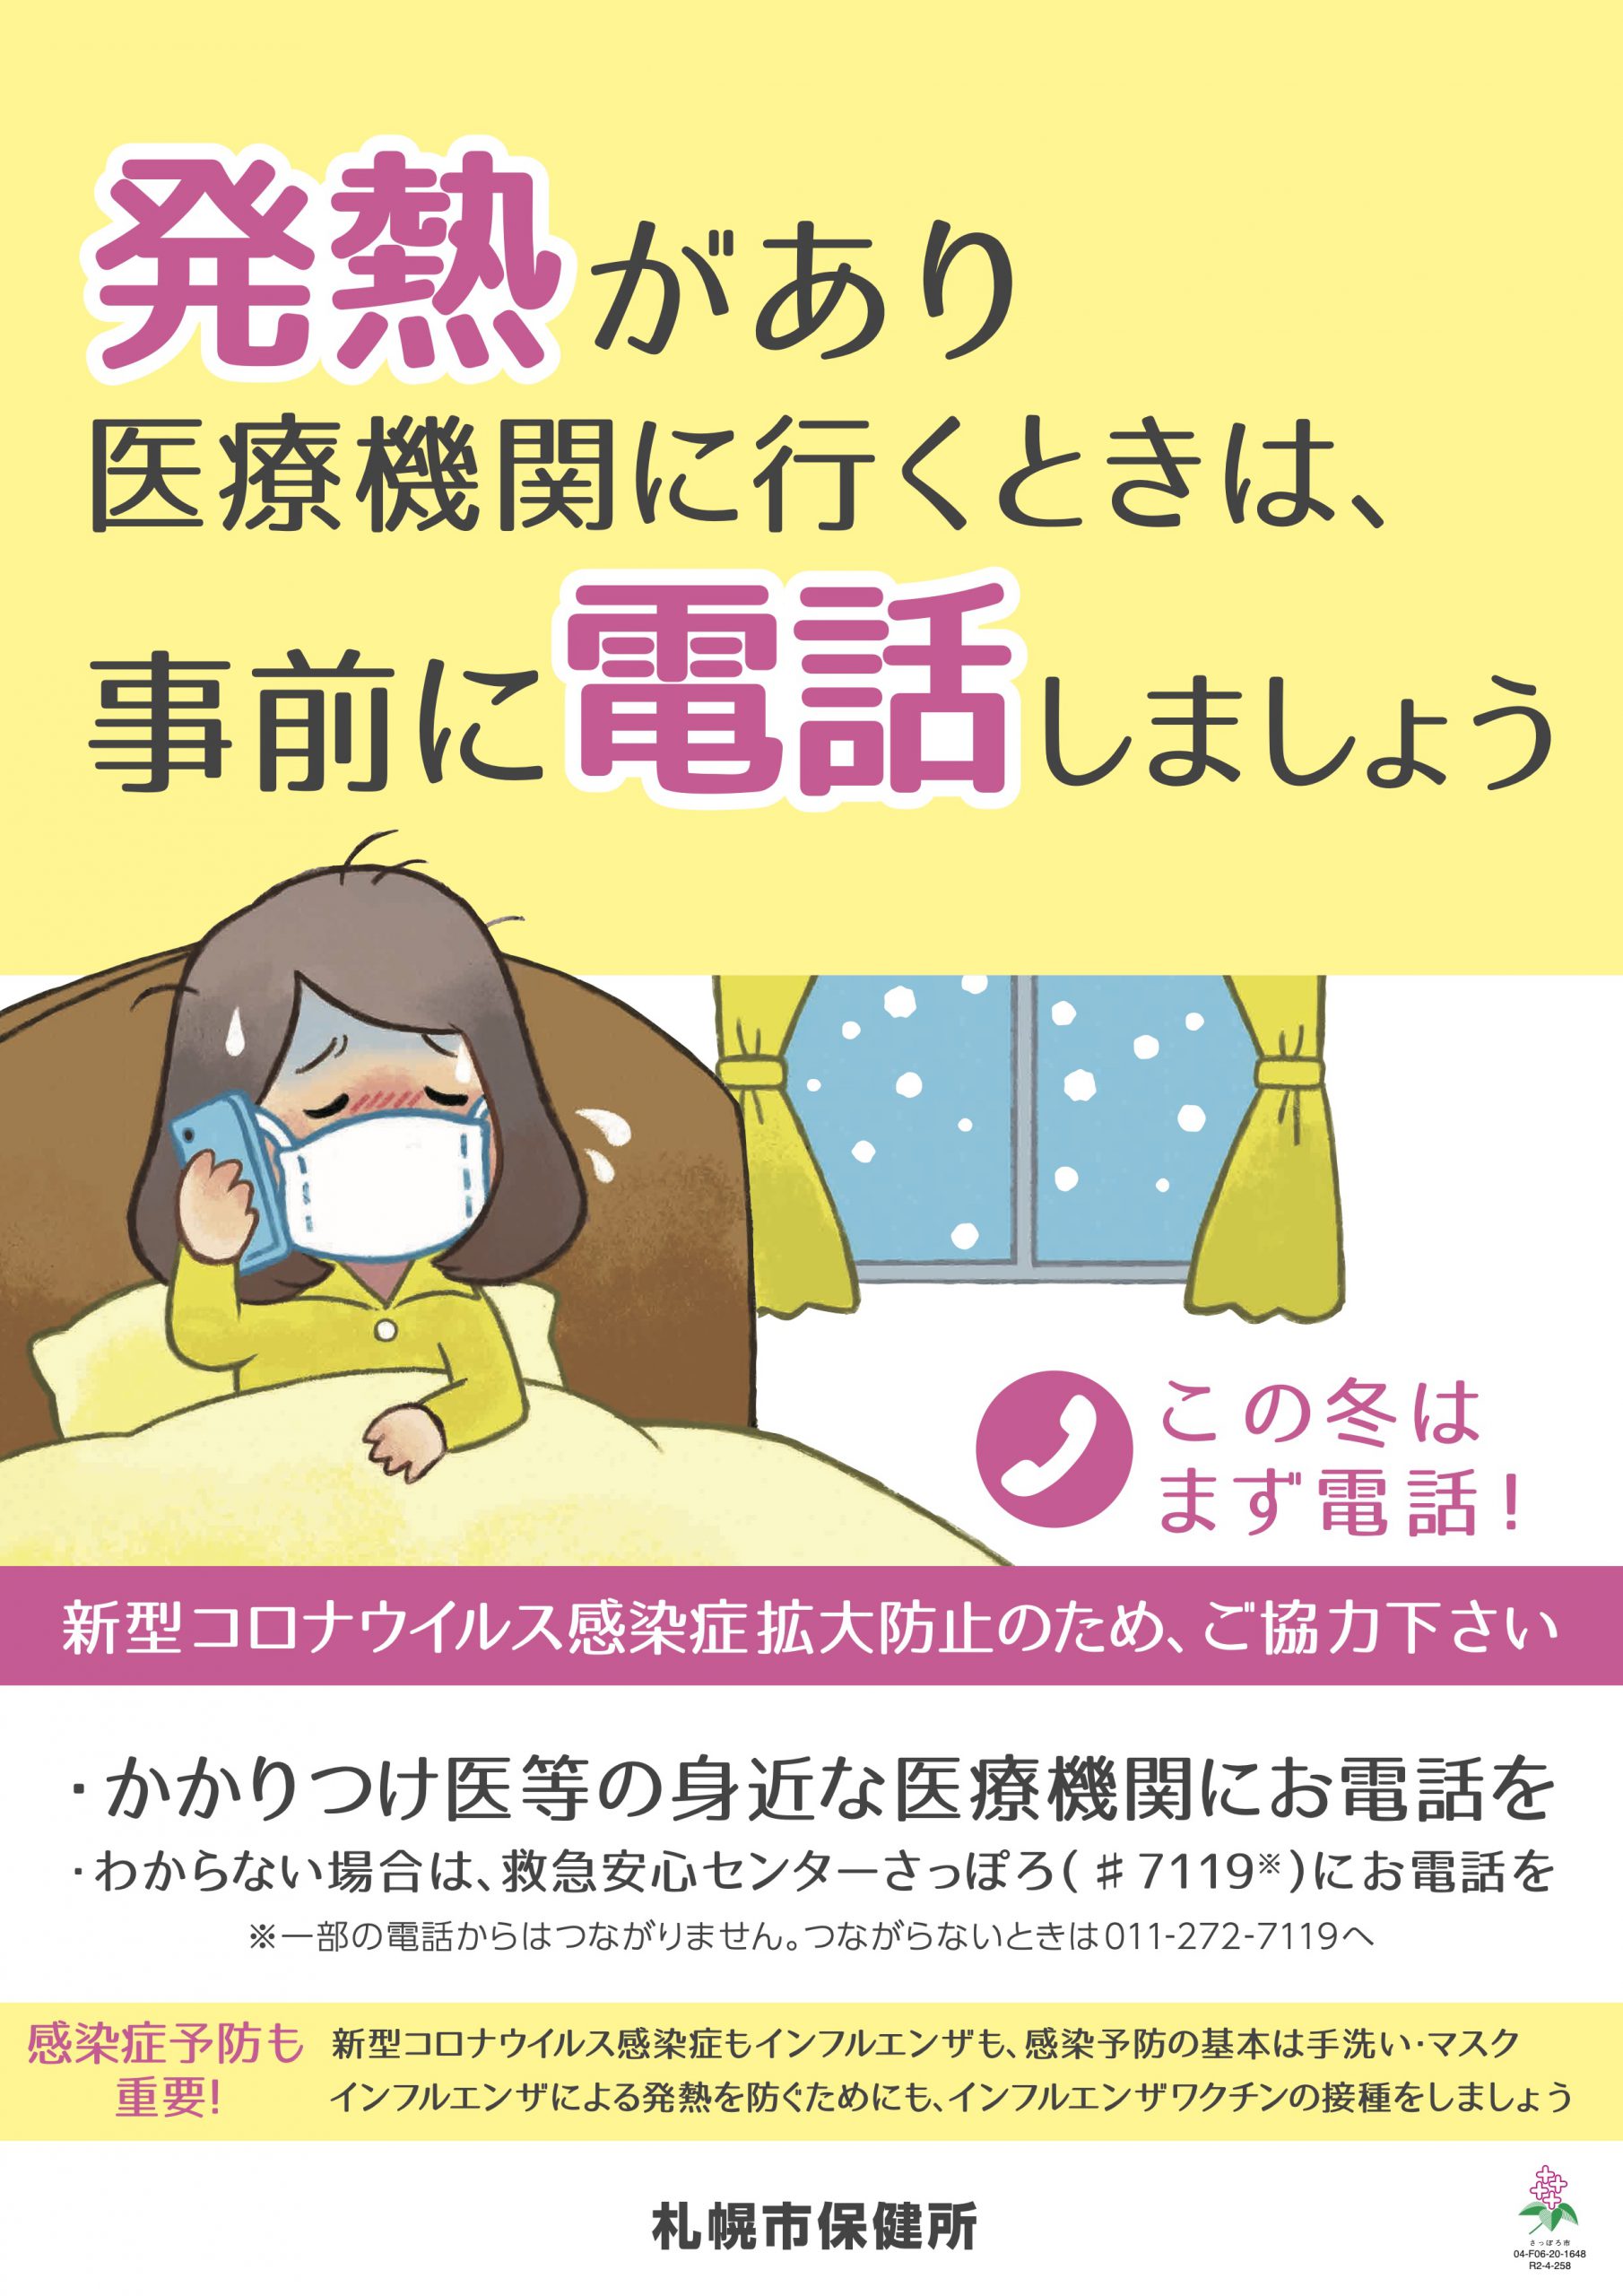 厚別ひばりクリニックは北海道より、発熱者等診療・検査医療機関に指定